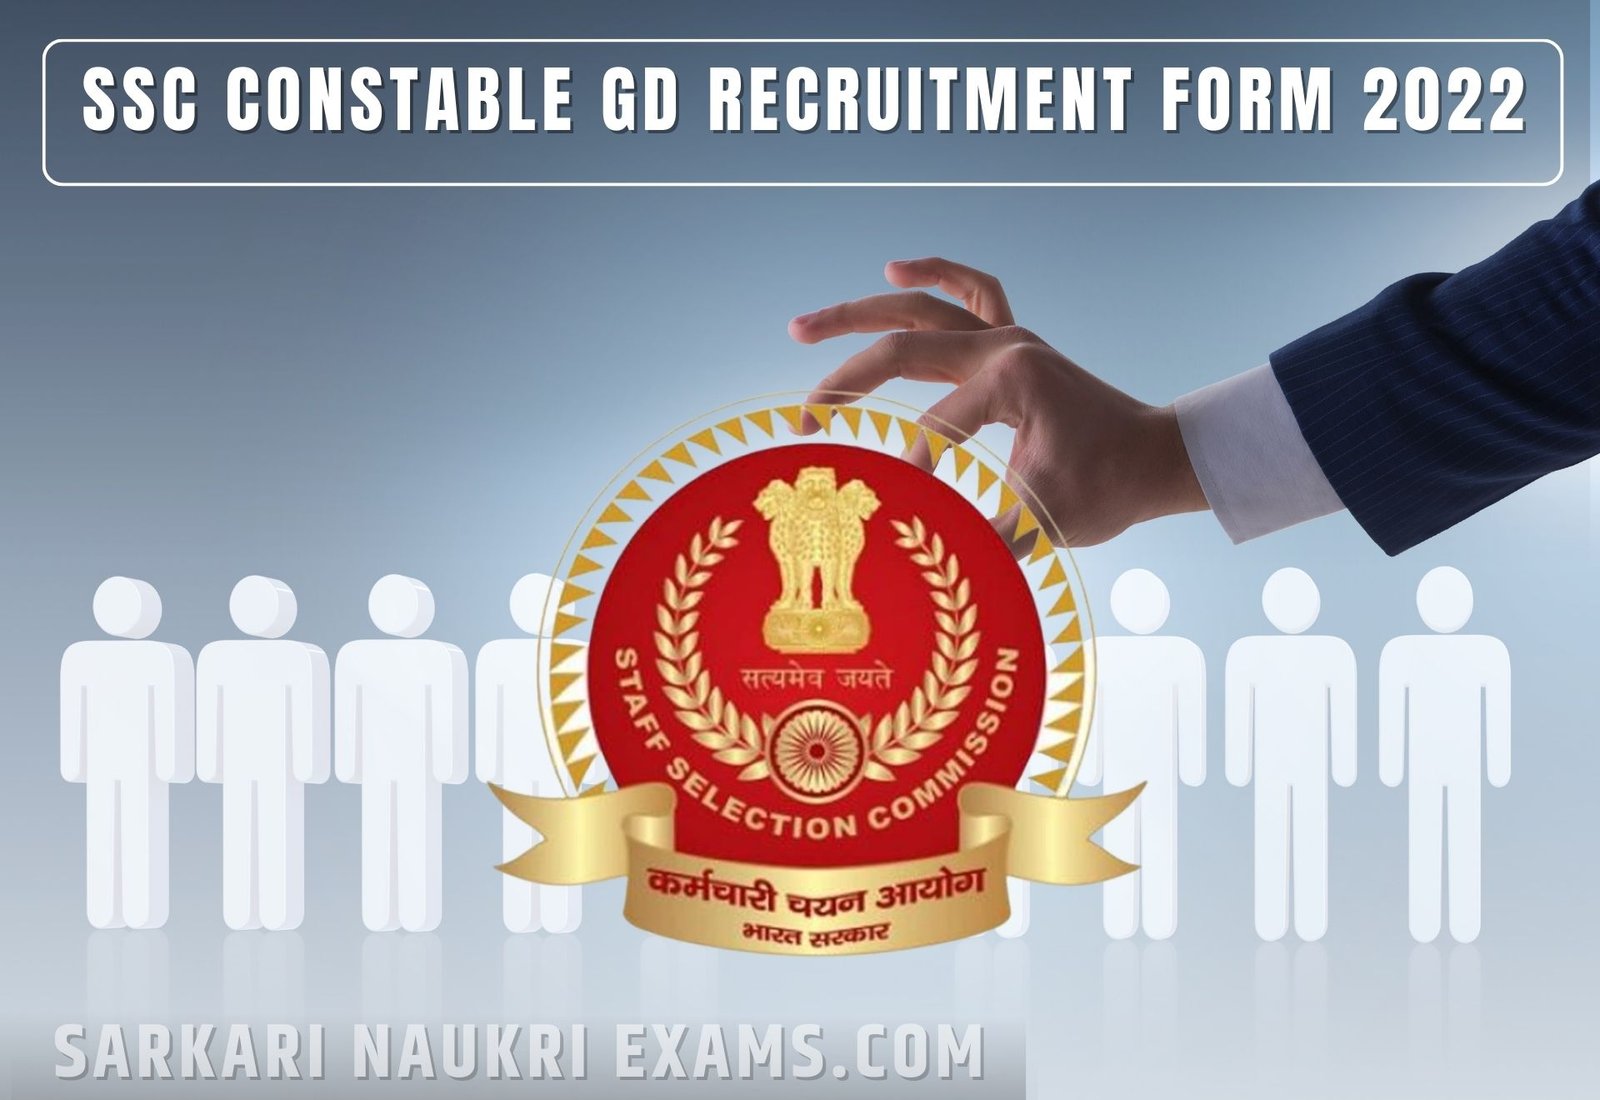 SSC Constable GD Recruitment Form 2022 | 10th Pass Job